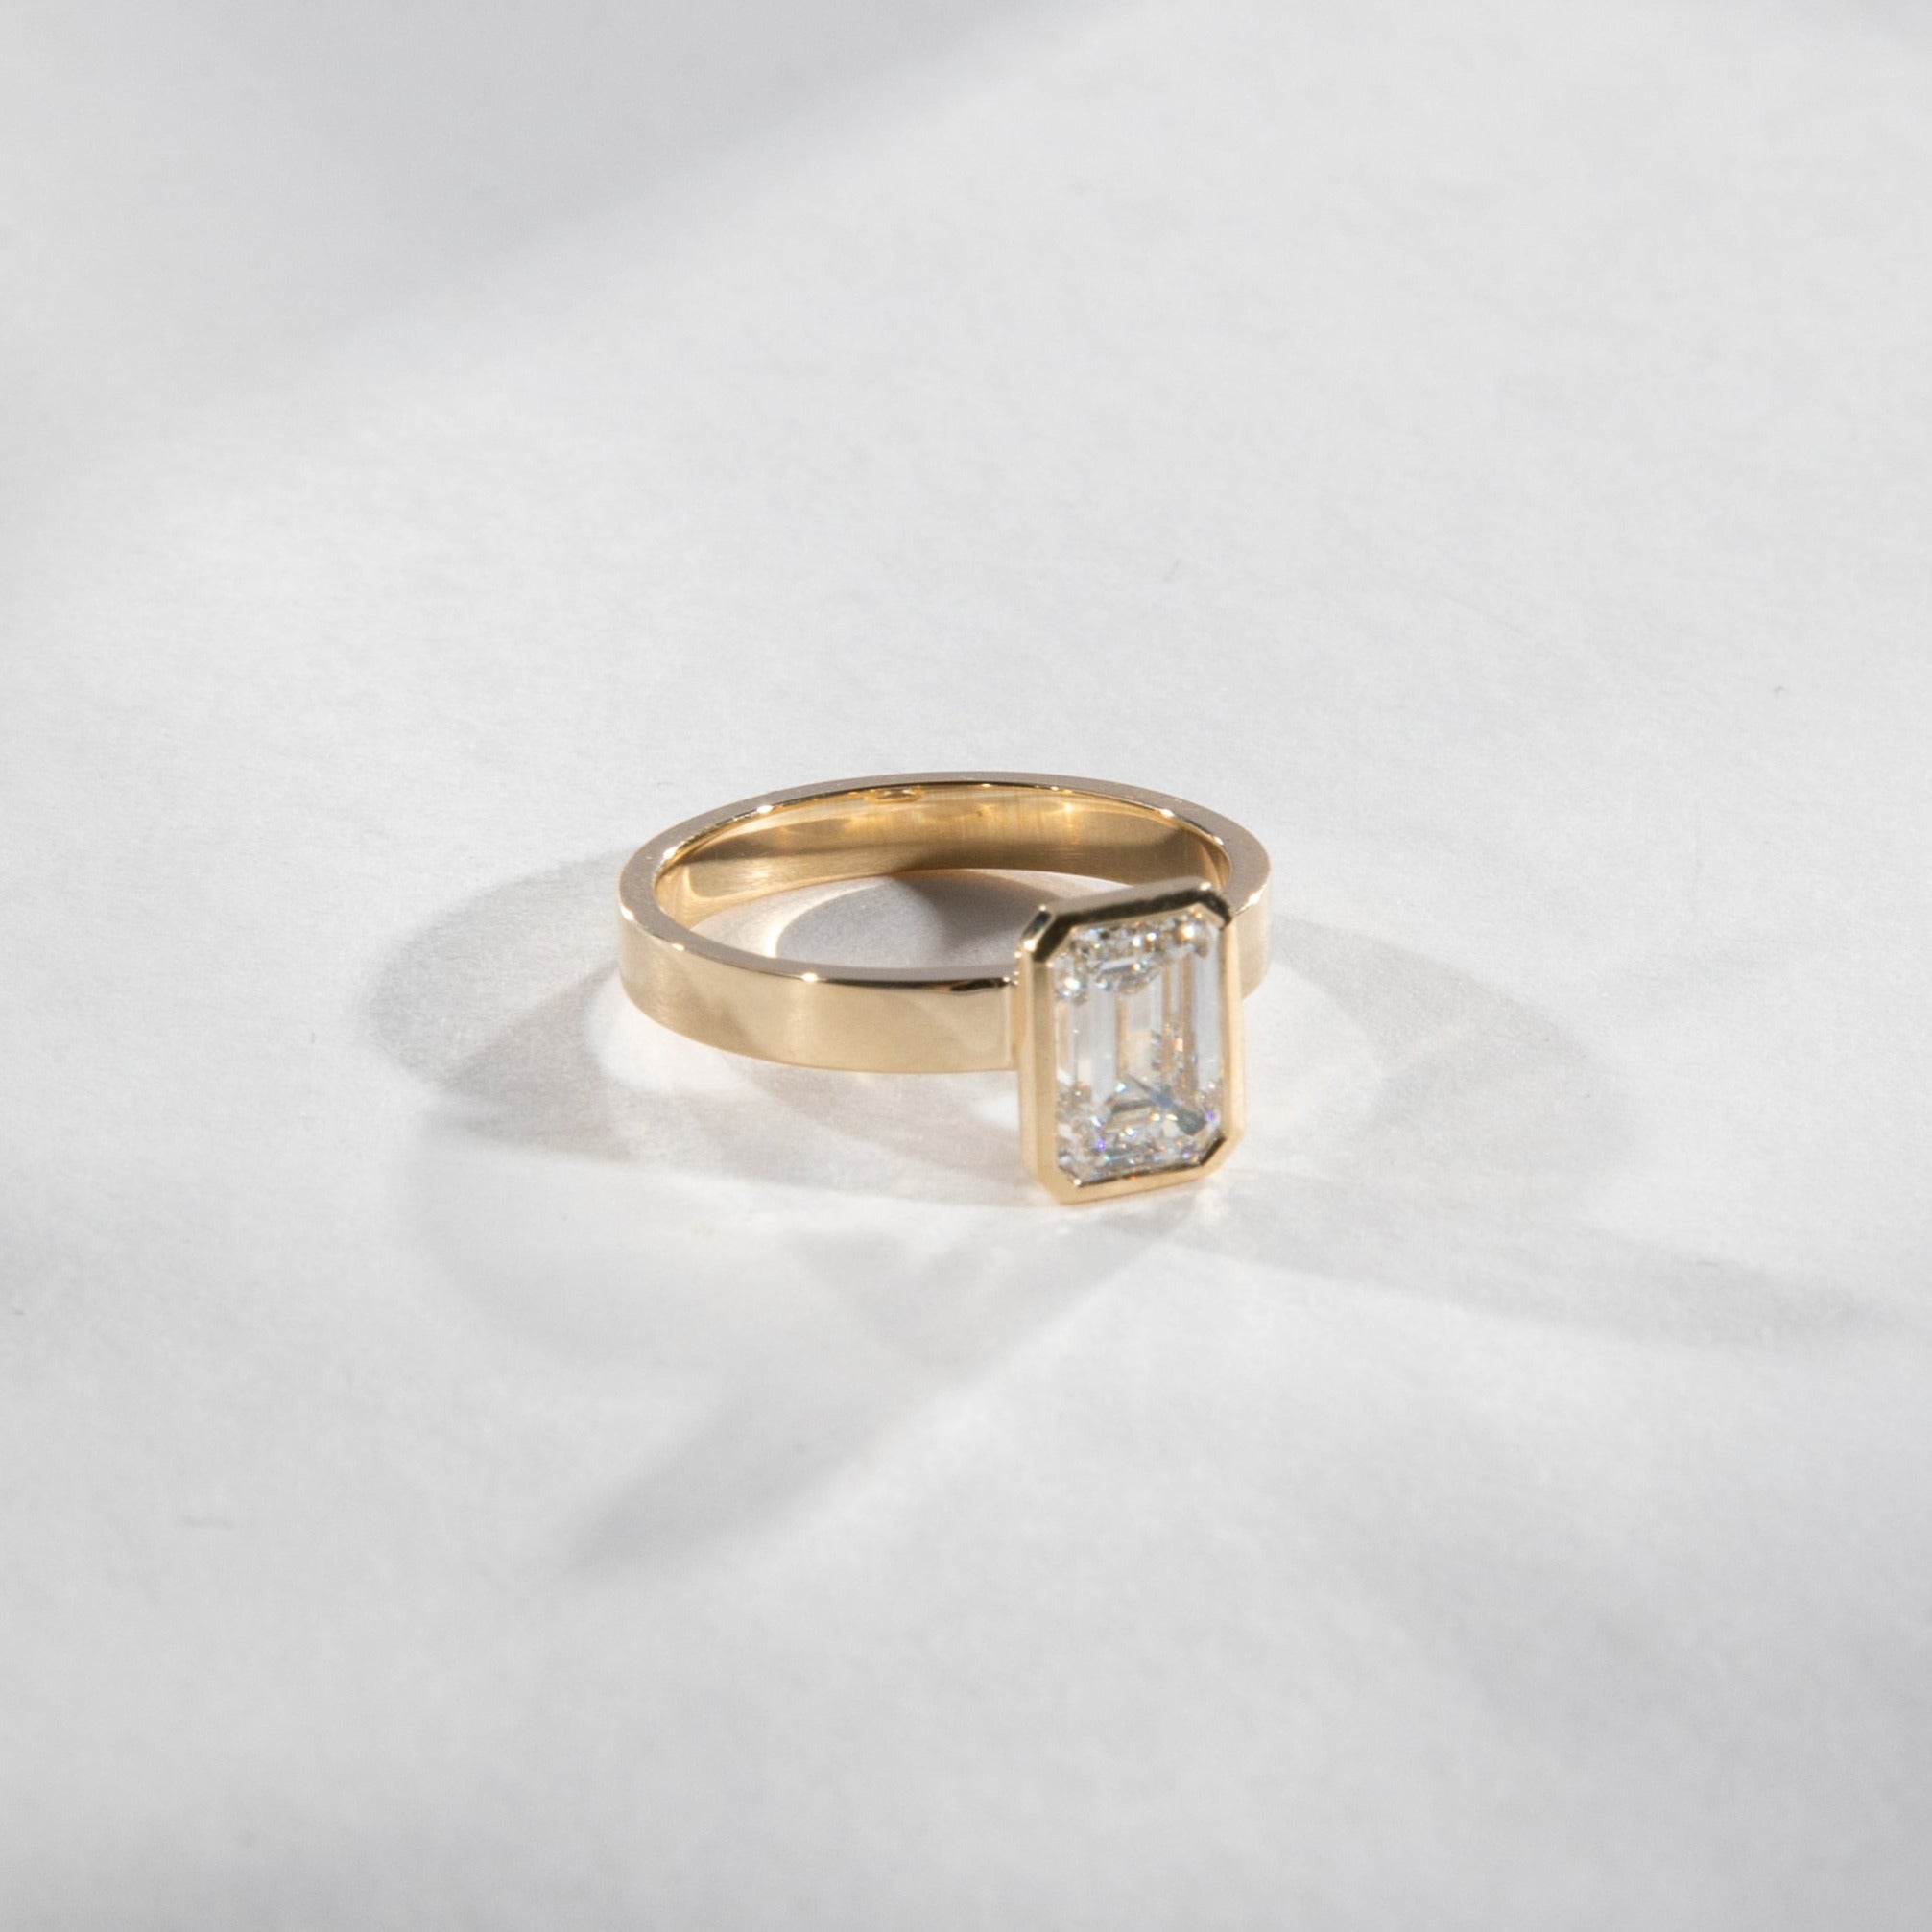 Badi Designer ring in 14k Yellow Gold set with a lab-grown diamond